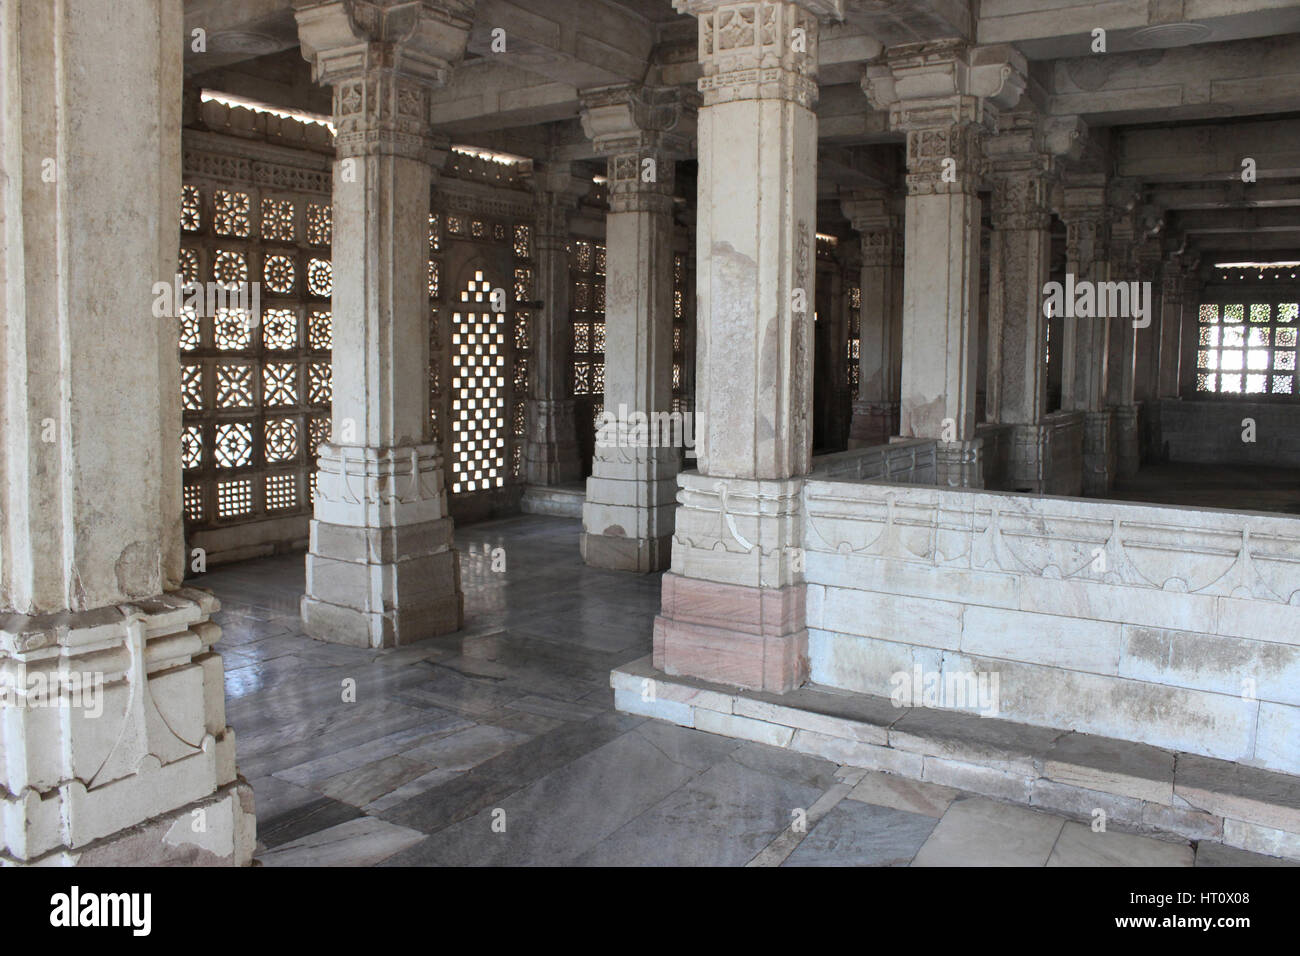 Style islamique peut être vu dans l'abondance des supports, des piliers et des dômes annelés alors que la majeure partie des motifs et les embellissements pièce style hindou. Sarkhe Banque D'Images